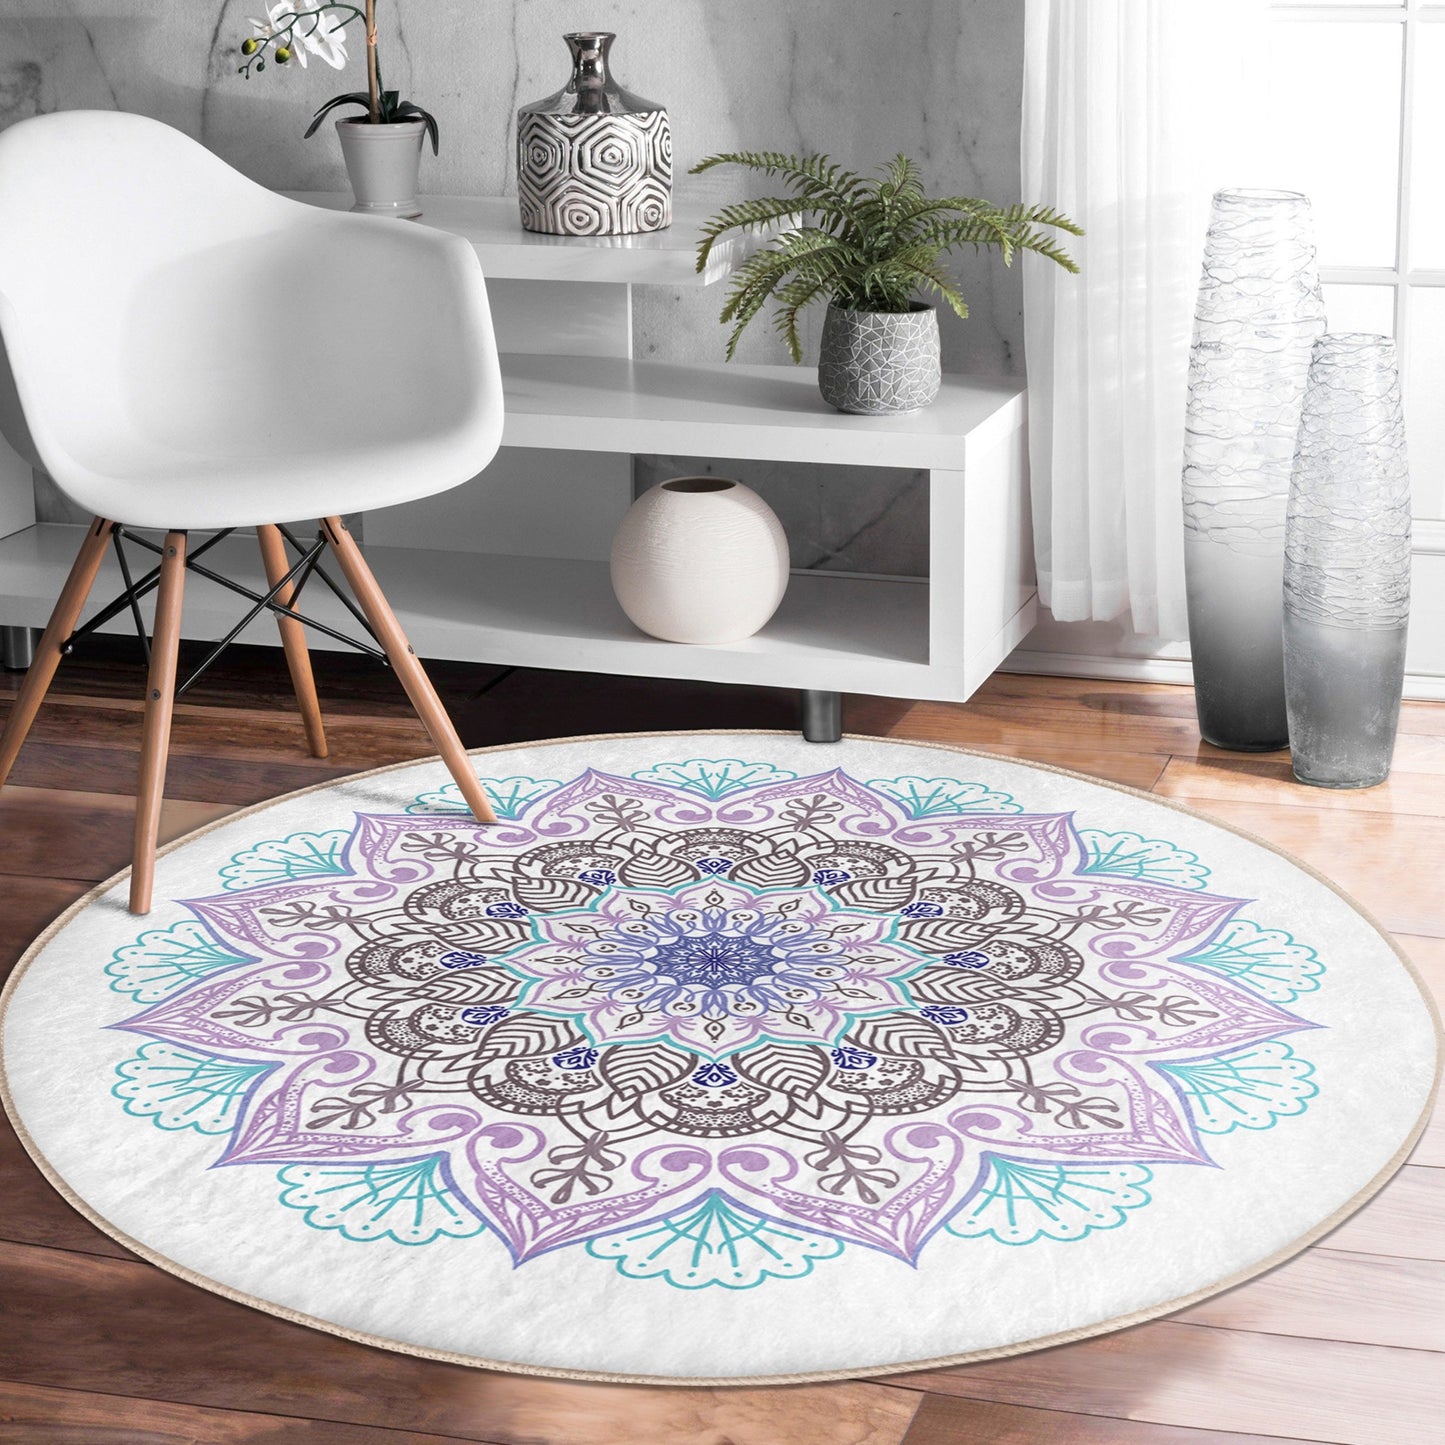 Exquisite Mandala Printed Cozy Rug - Intricate Design